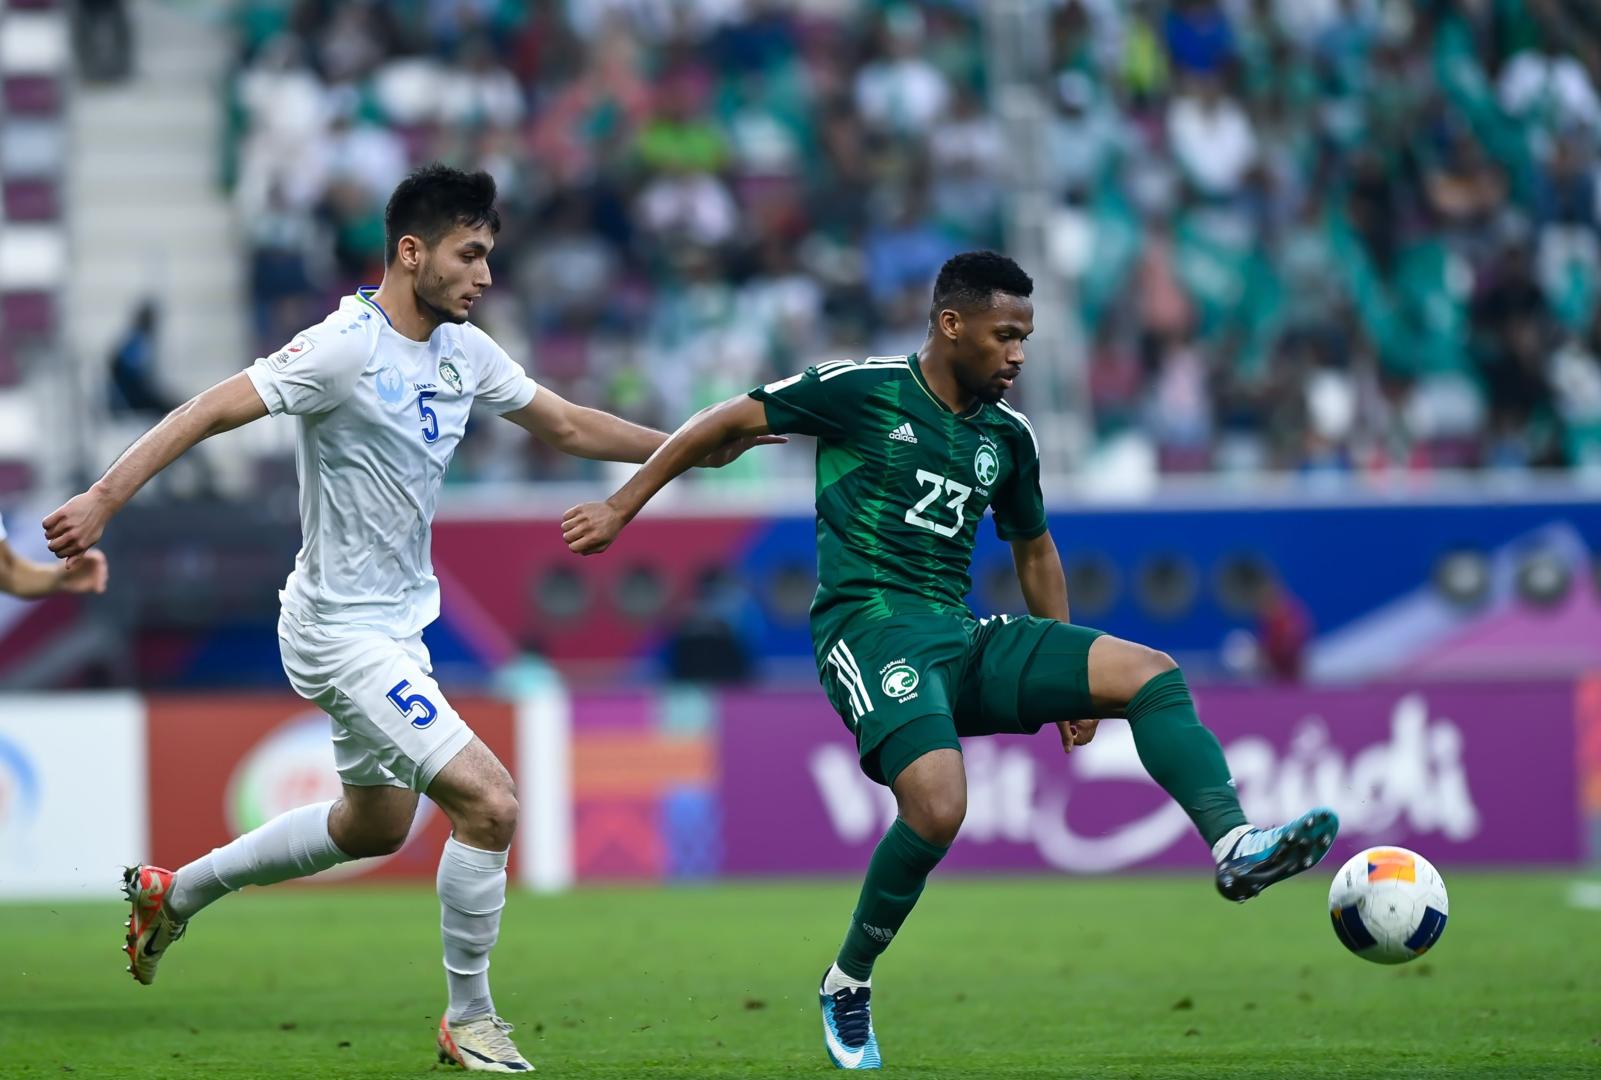 گرین ٹیم کوارٹر فائنل میں ازبکستان سے شکست کے بعد انڈر 23 ایشیائی کپ سے باہر ہوگئی